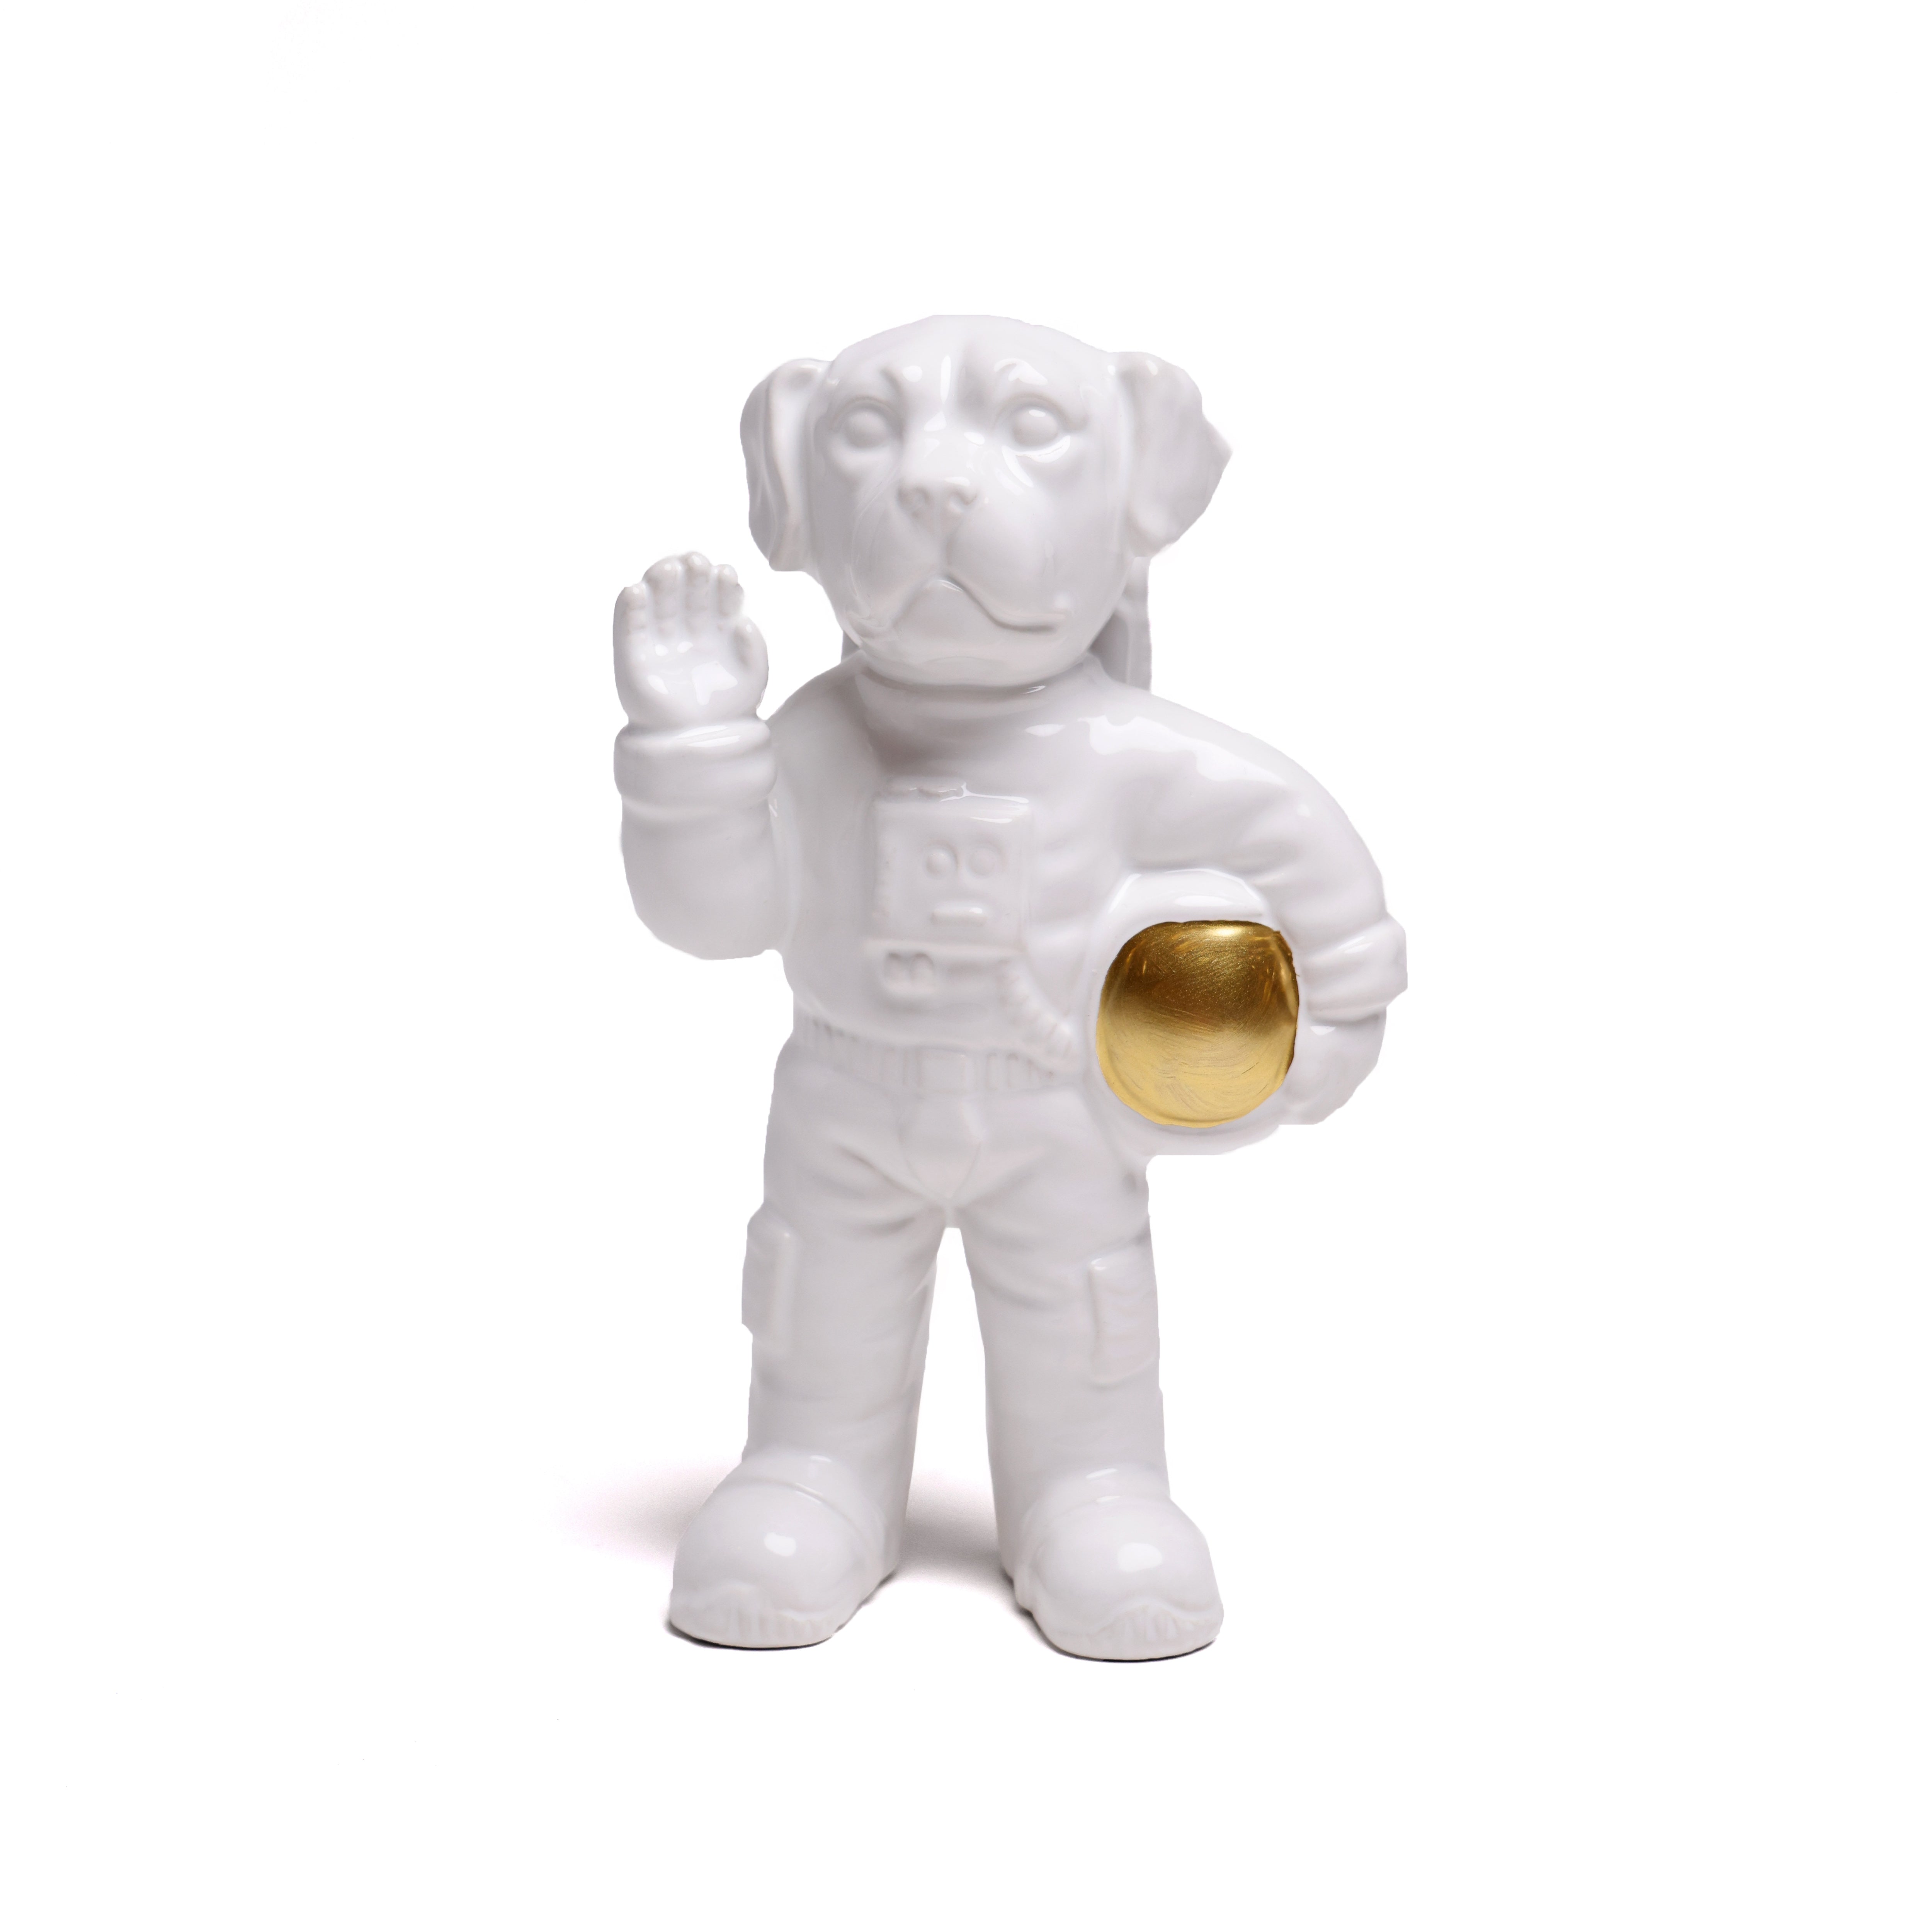 Laika the Astronaut Ceramic Vase